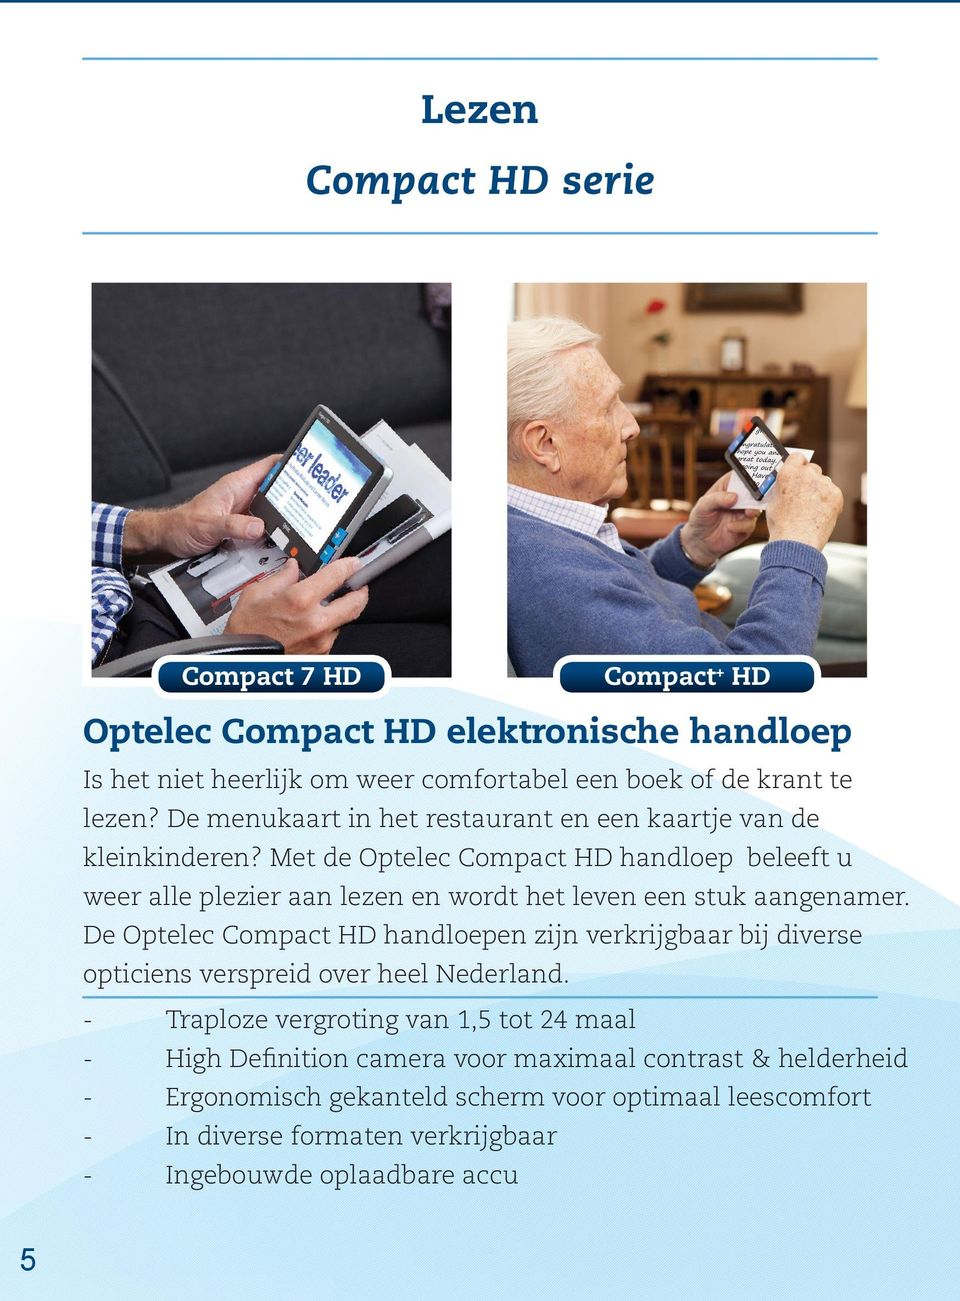 Met de Optelec Compact HD handloep beleeft u weer alle plezier aan lezen en wordt het leven een stuk aangenamer.